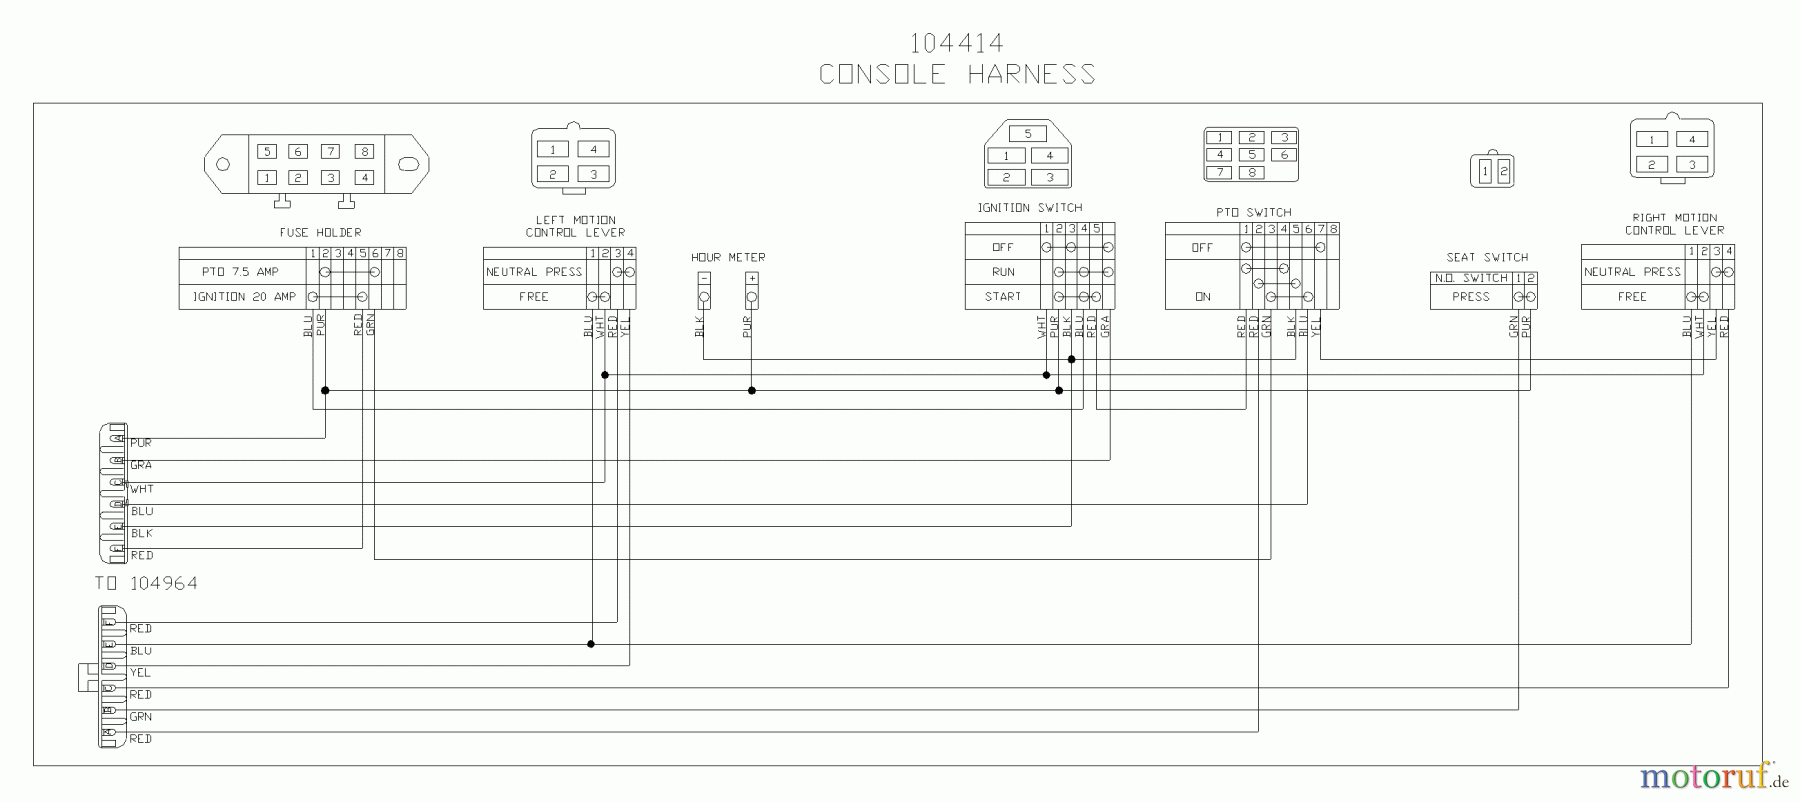  Husqvarna Nullwendekreismäher, Zero-Turn iZ 4217 SKAA (968999229) - Husqvarna Zero-Turn Mower (2004-09 & After) (SN: 033600000 & Up) Wiring Diagram - Console Harness Schematic